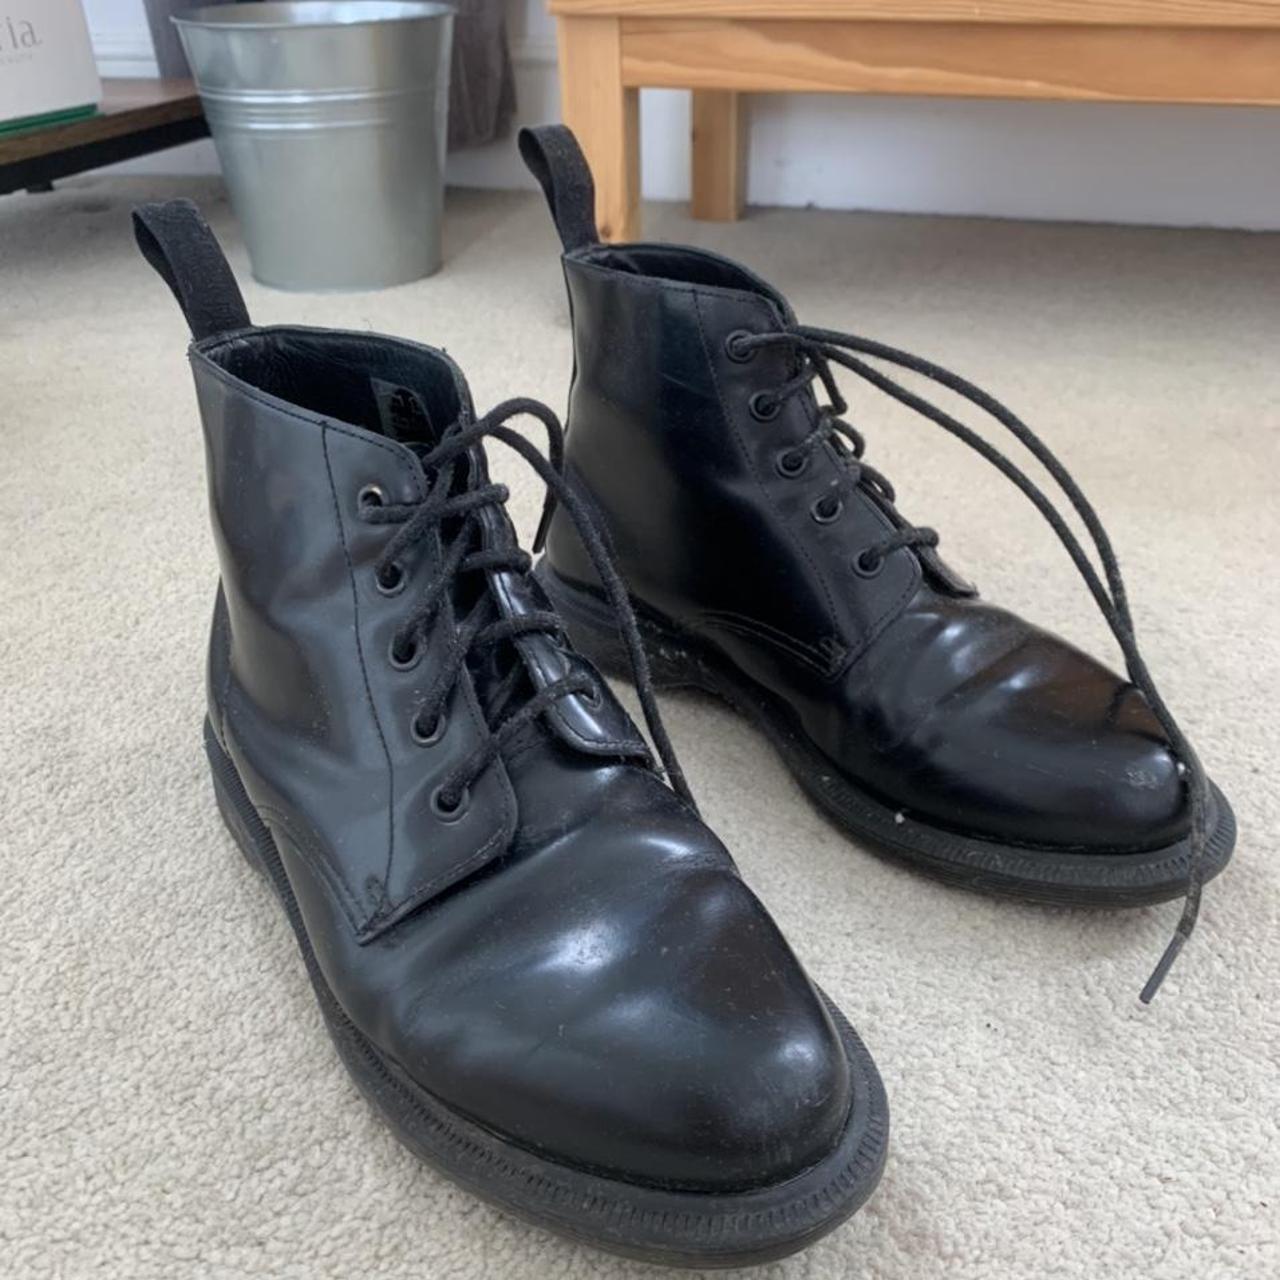 Dr Martens Emmeline Black Leather Boots - size... - Depop